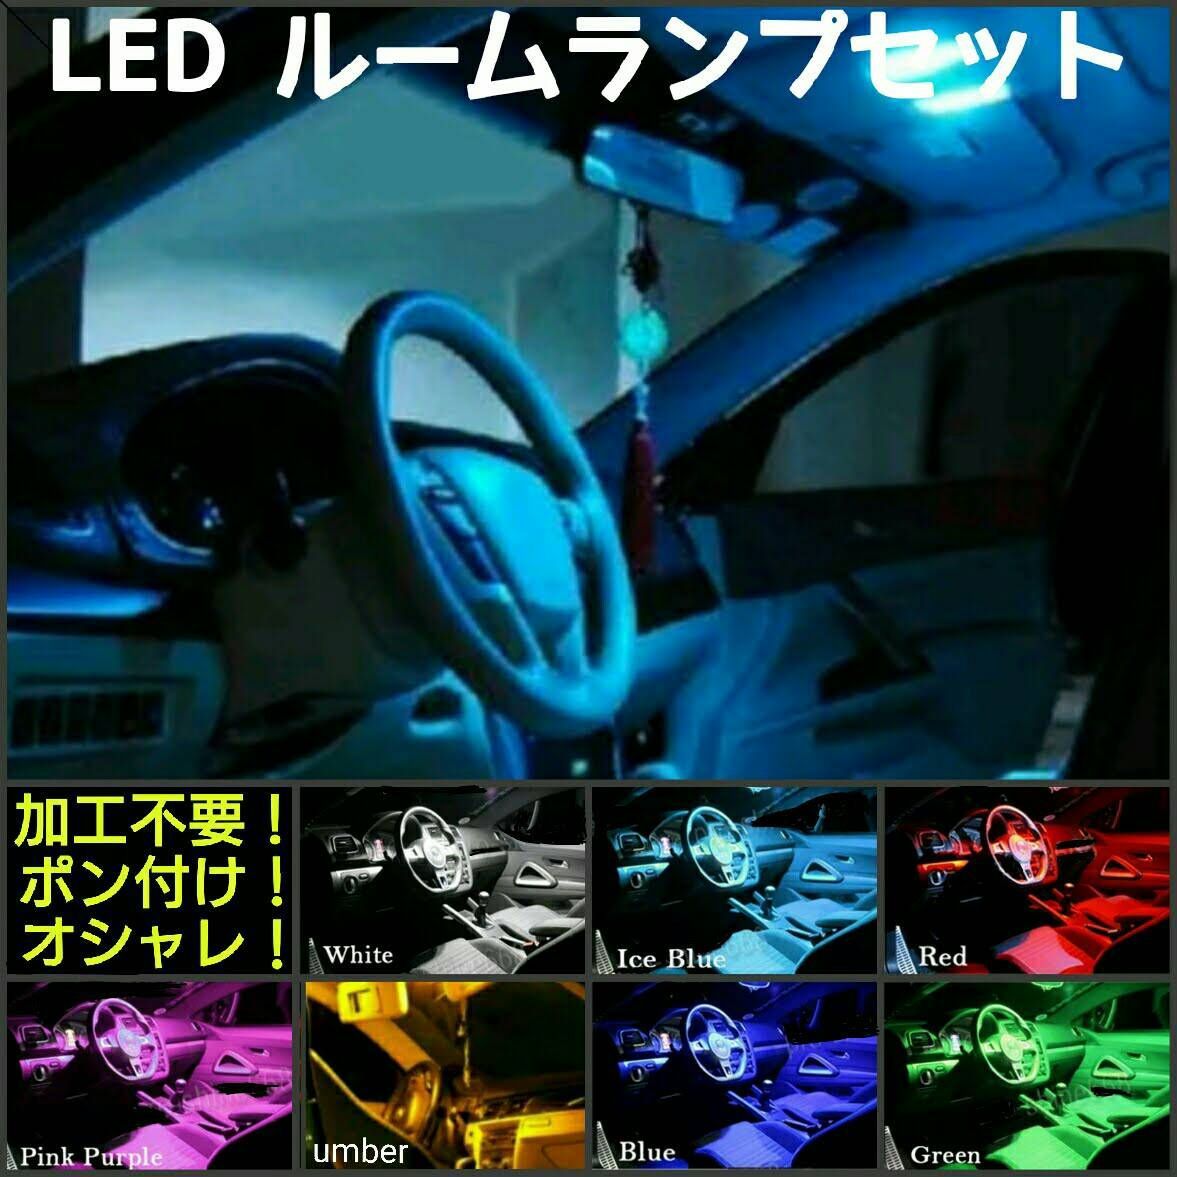 トヨタ ガイア (オーバーヘッドコンソール付車除く) LEDルームランプセット - メルカリ